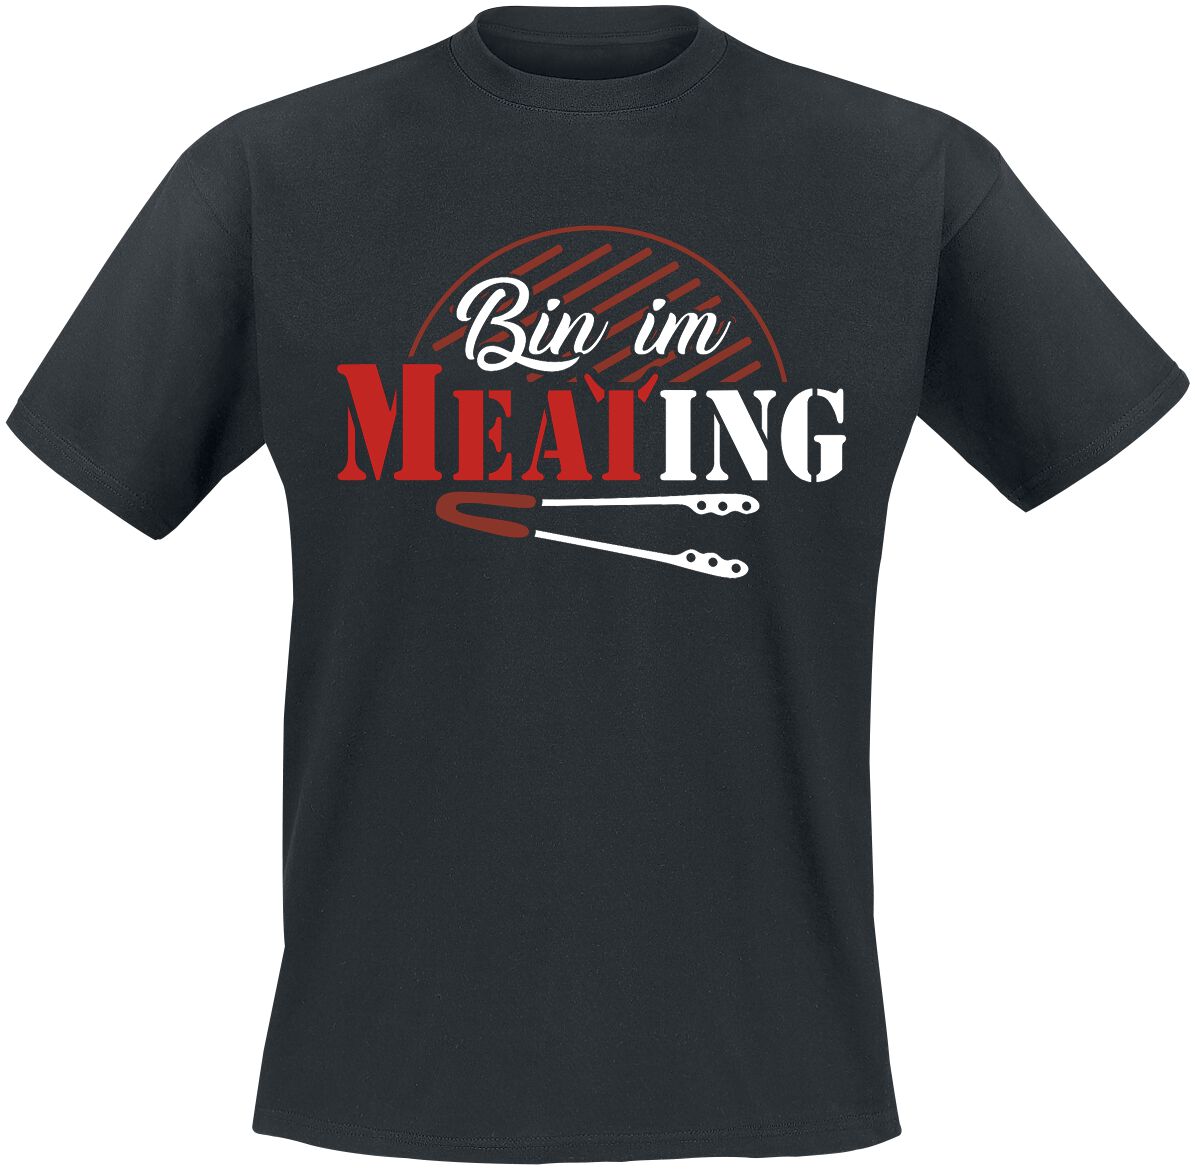 Food T-Shirt - Bin im Meating - S bis 5XL - für Männer - Größe 5XL - schwarz